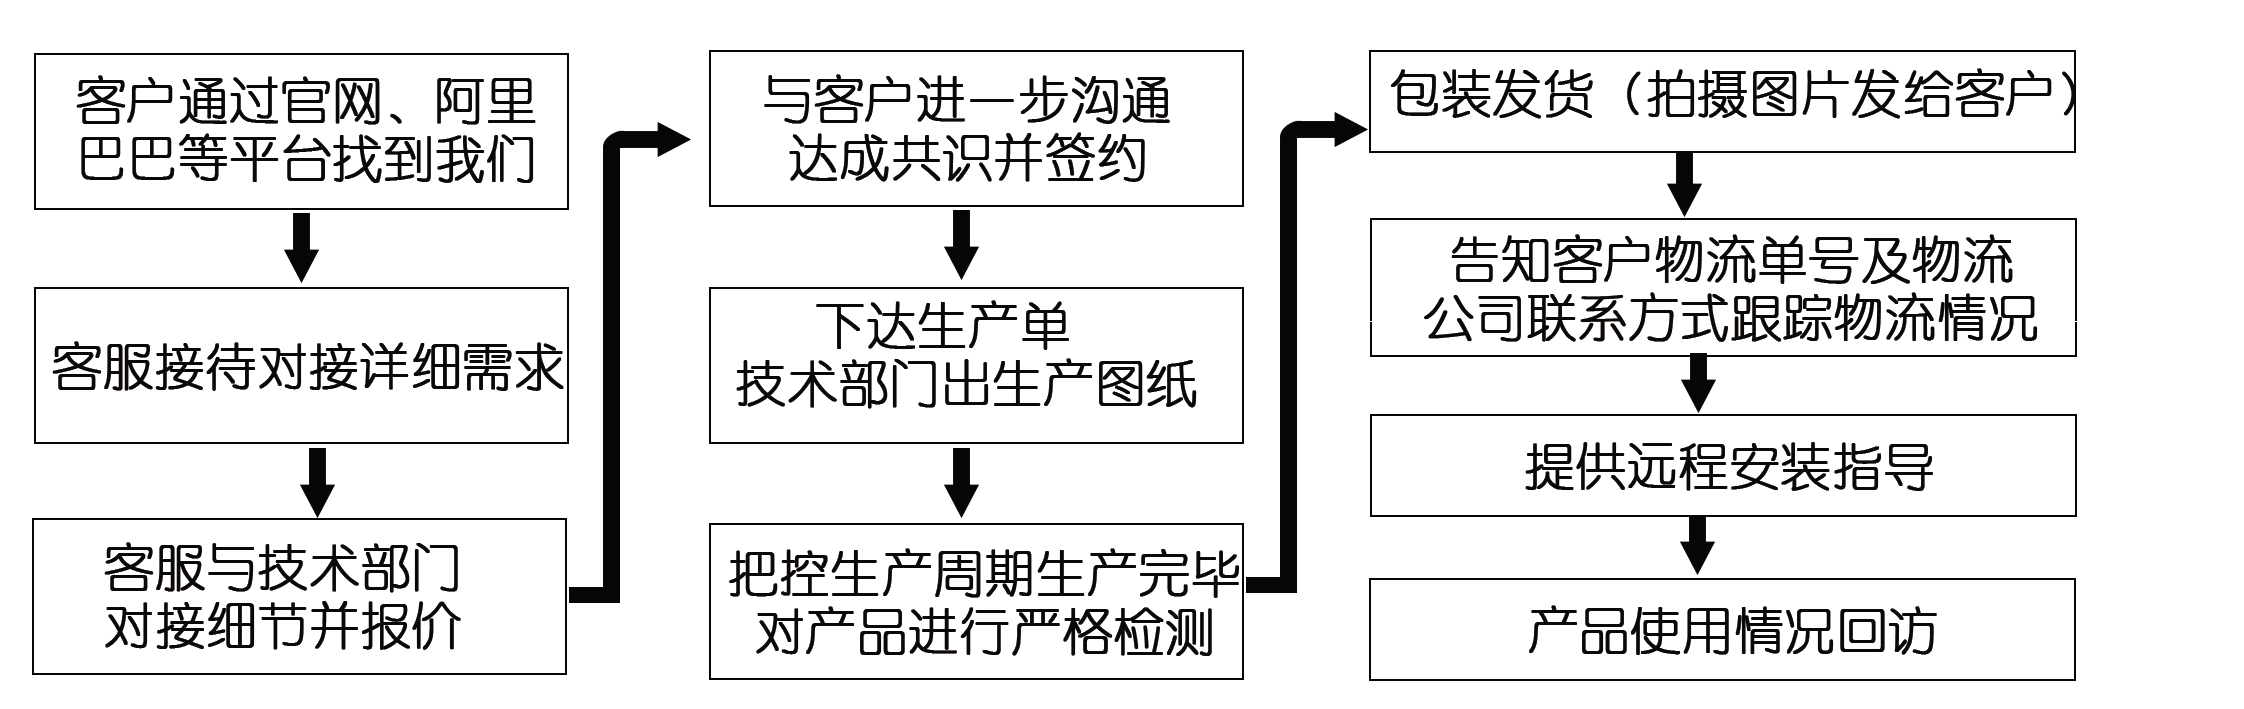 江苏江河网络订货流程图